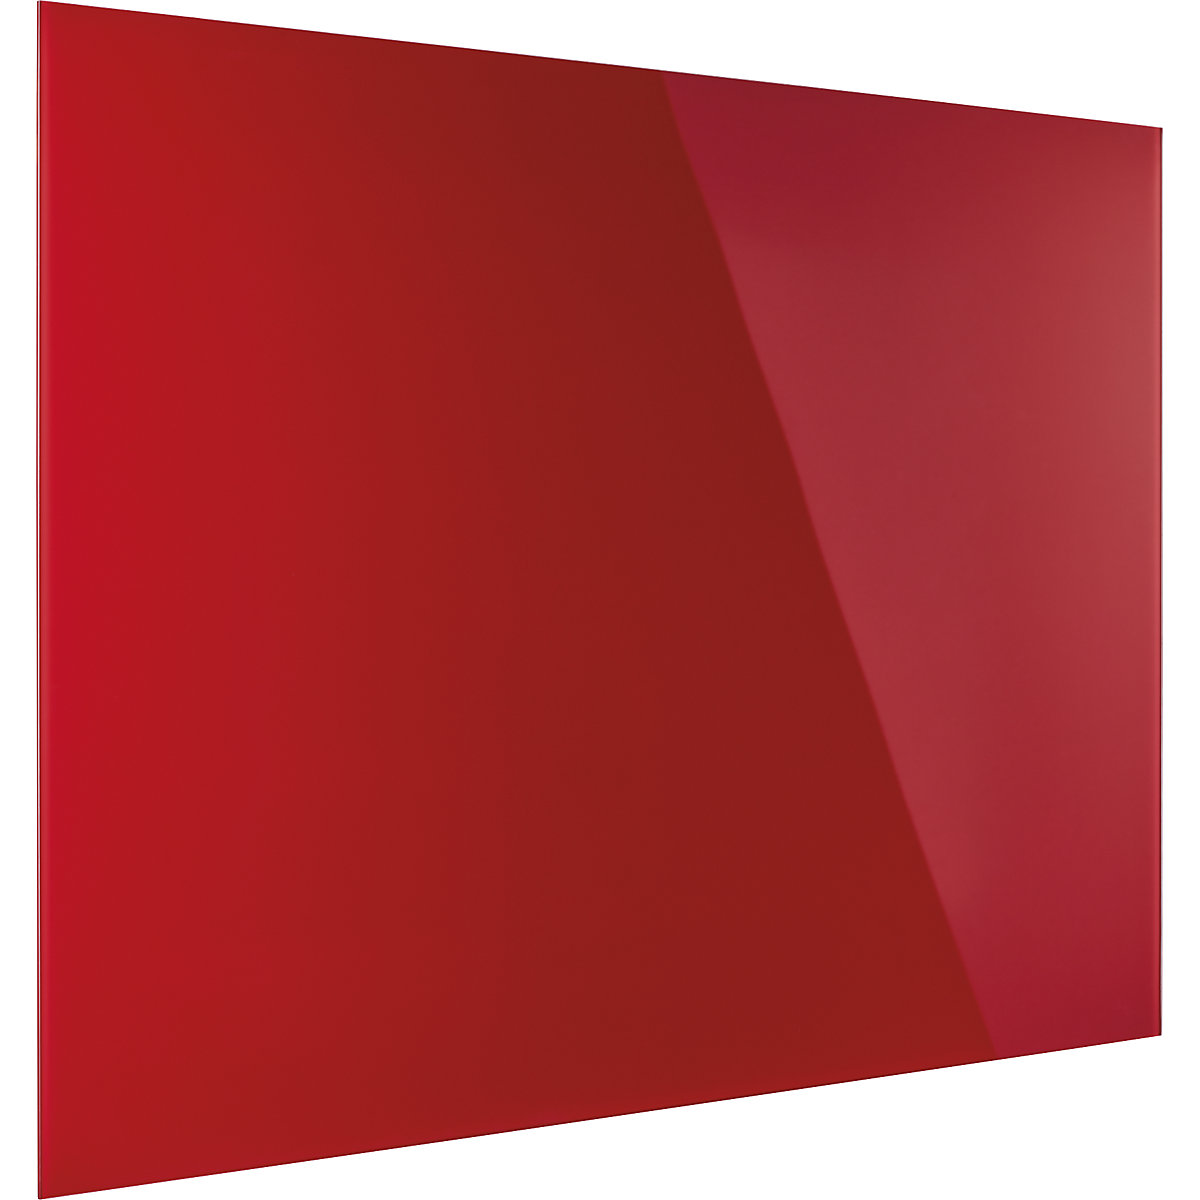 magnetoplan – Dizajnerska staklena ploča, magnetna, ŠxV 1500 x 1000 mm, u intenzivno crvenoj boji